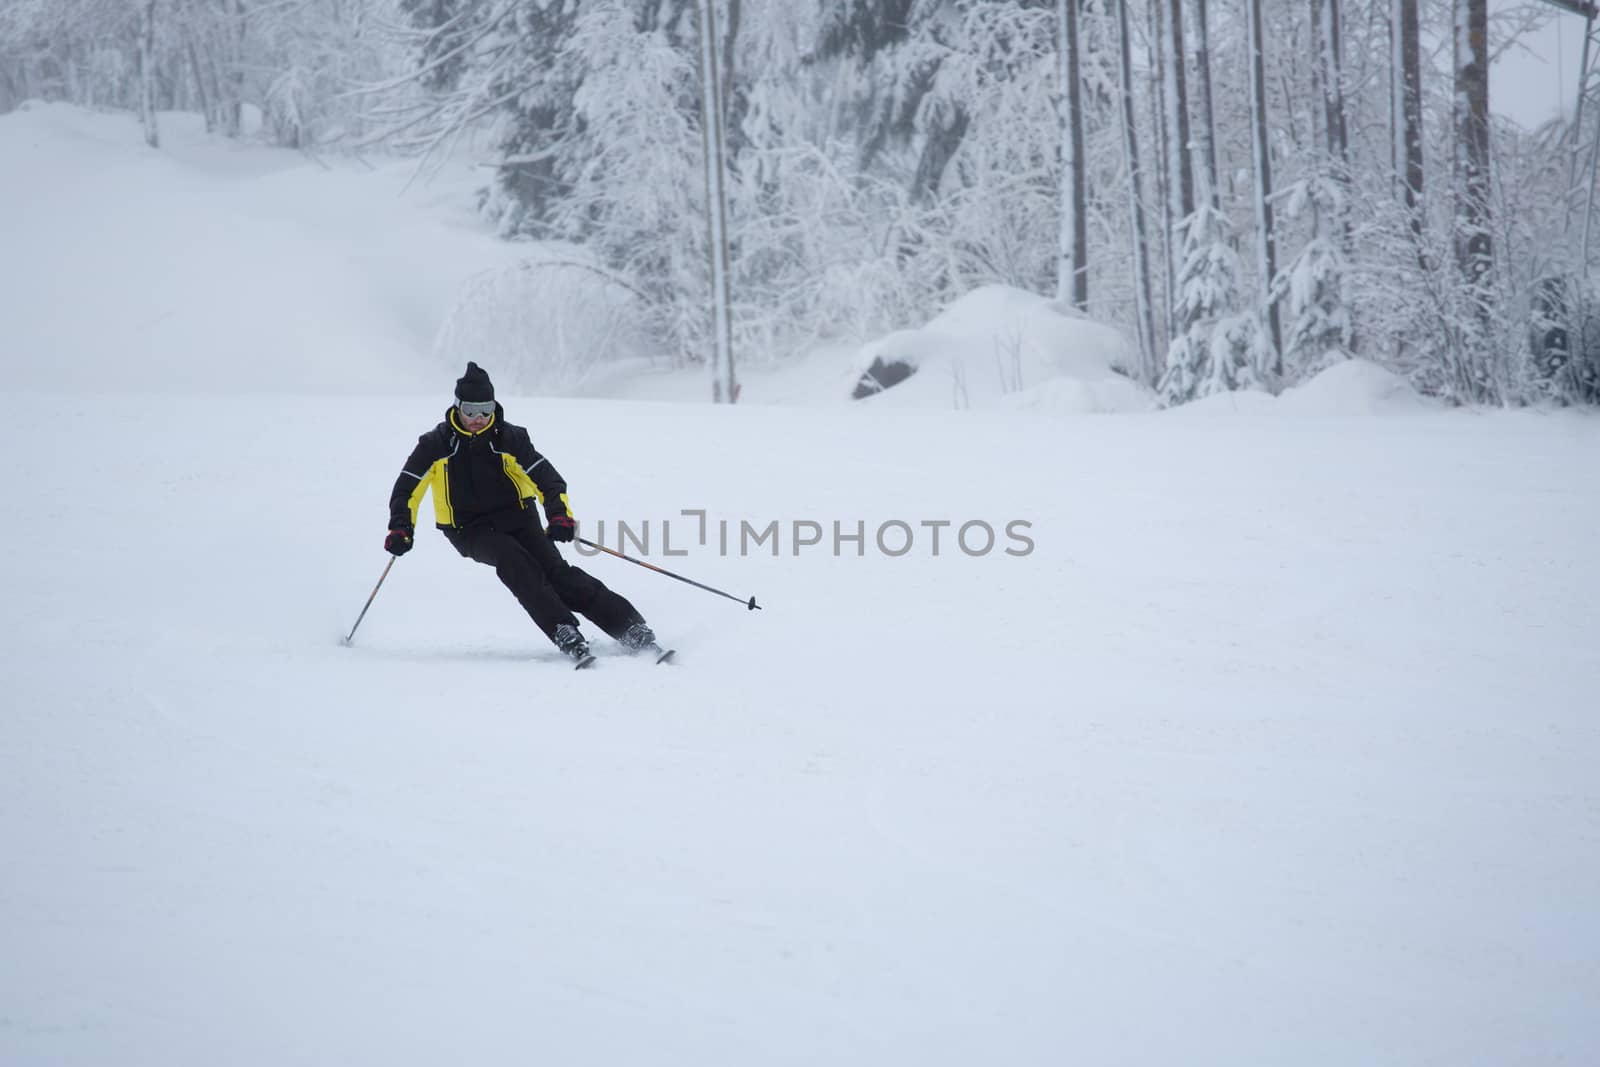 Skier on piste running downhill by destillat